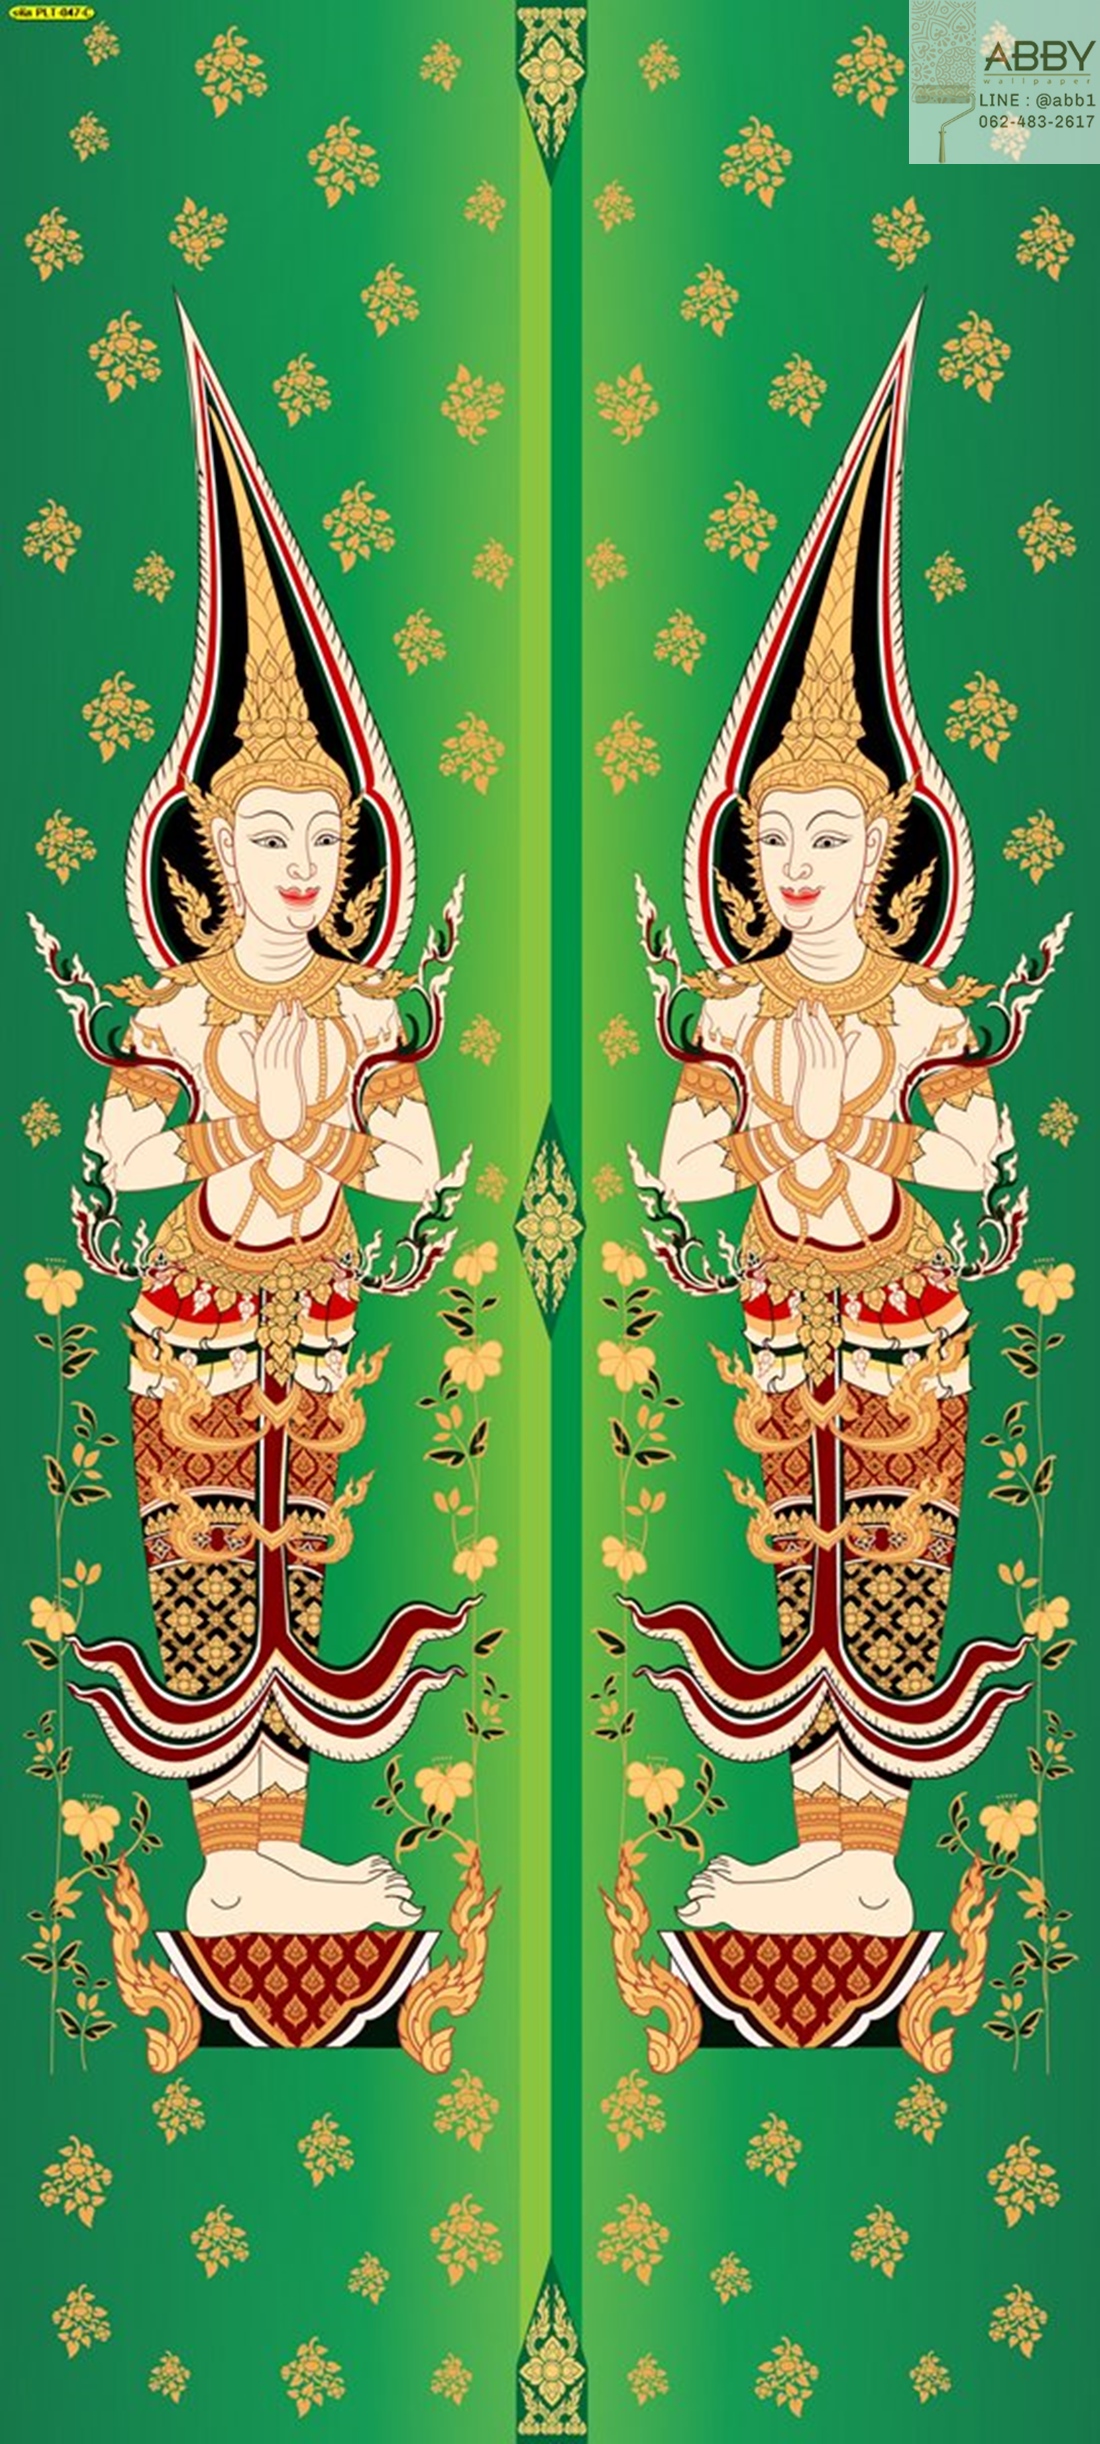 ภาพพิมพ์ประตูลายไทยเทวดาคู่พื้นเขียว